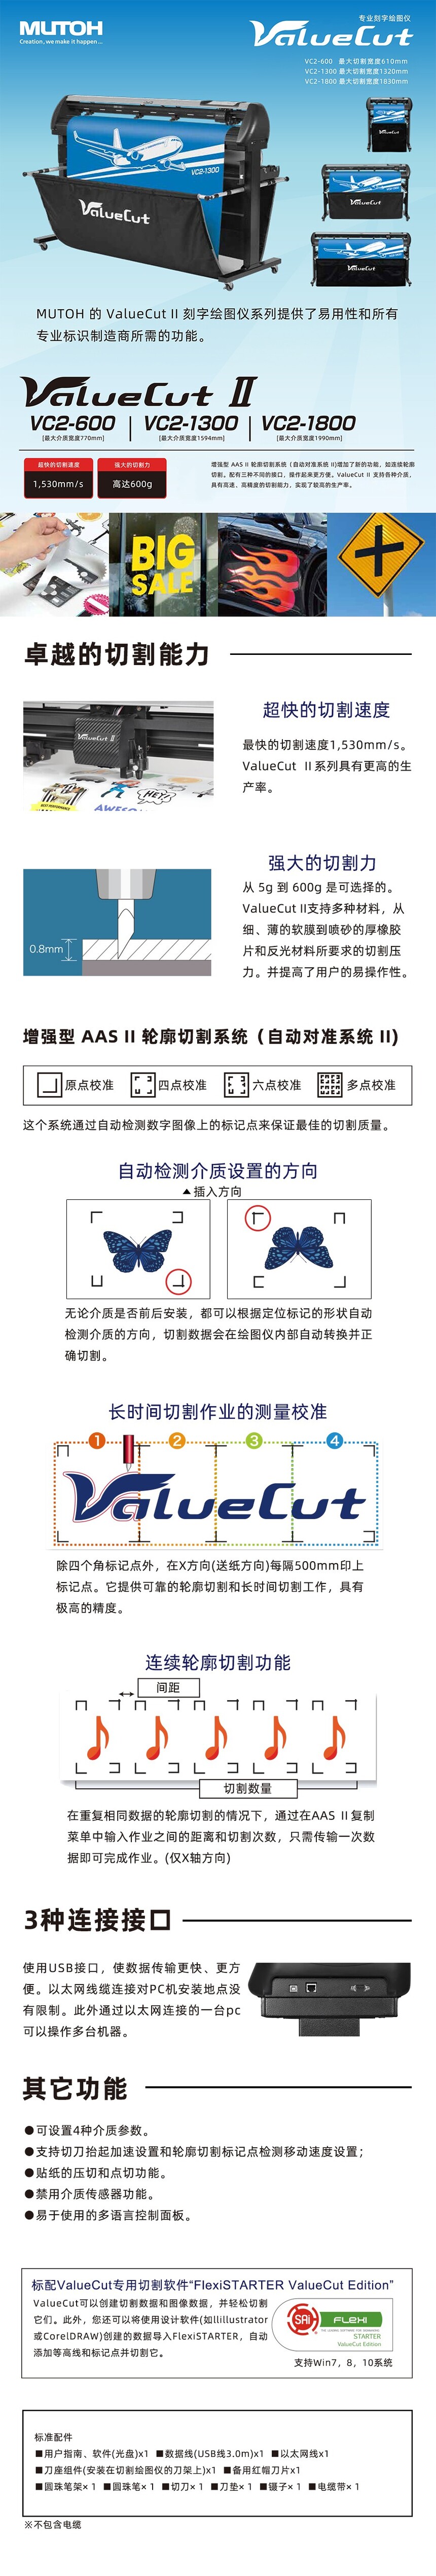 VC2刻字绘图仪中文产品说明.jpg